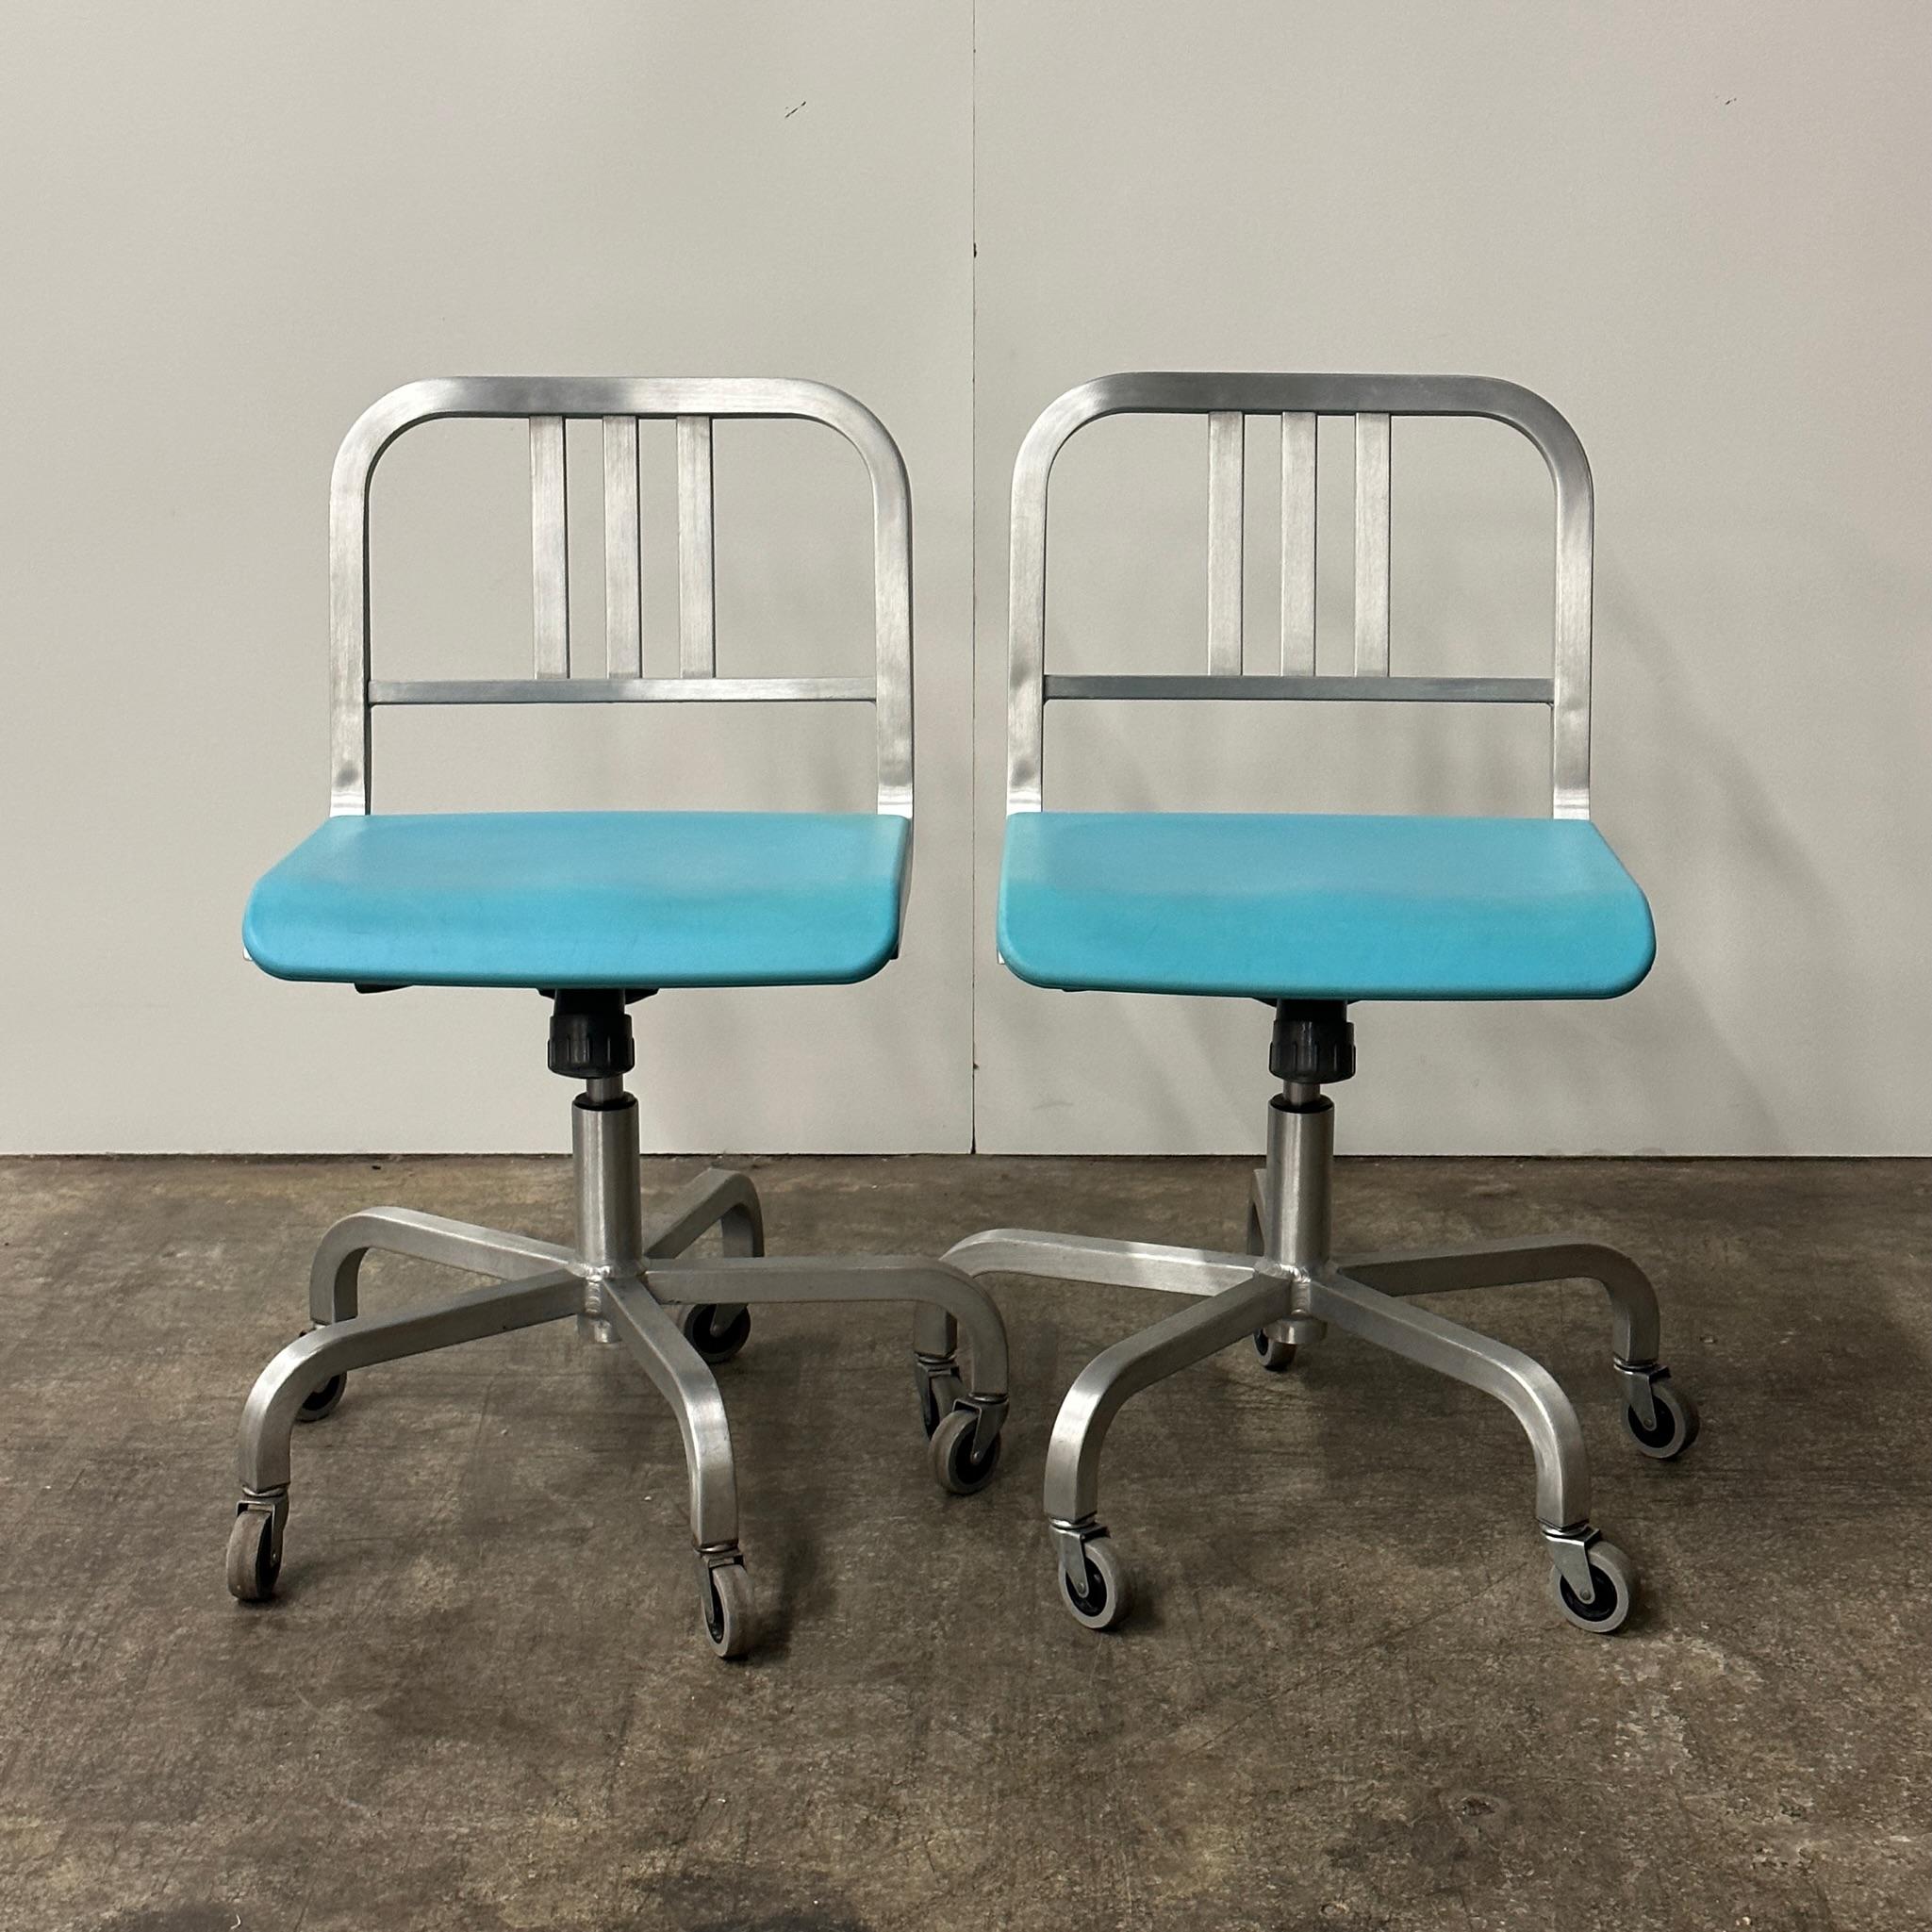 Construction en aluminium avec pad de siège en bleu.

Le prix est celui de l'ensemble. Contactez-nous si vous souhaitez acheter un seul article.